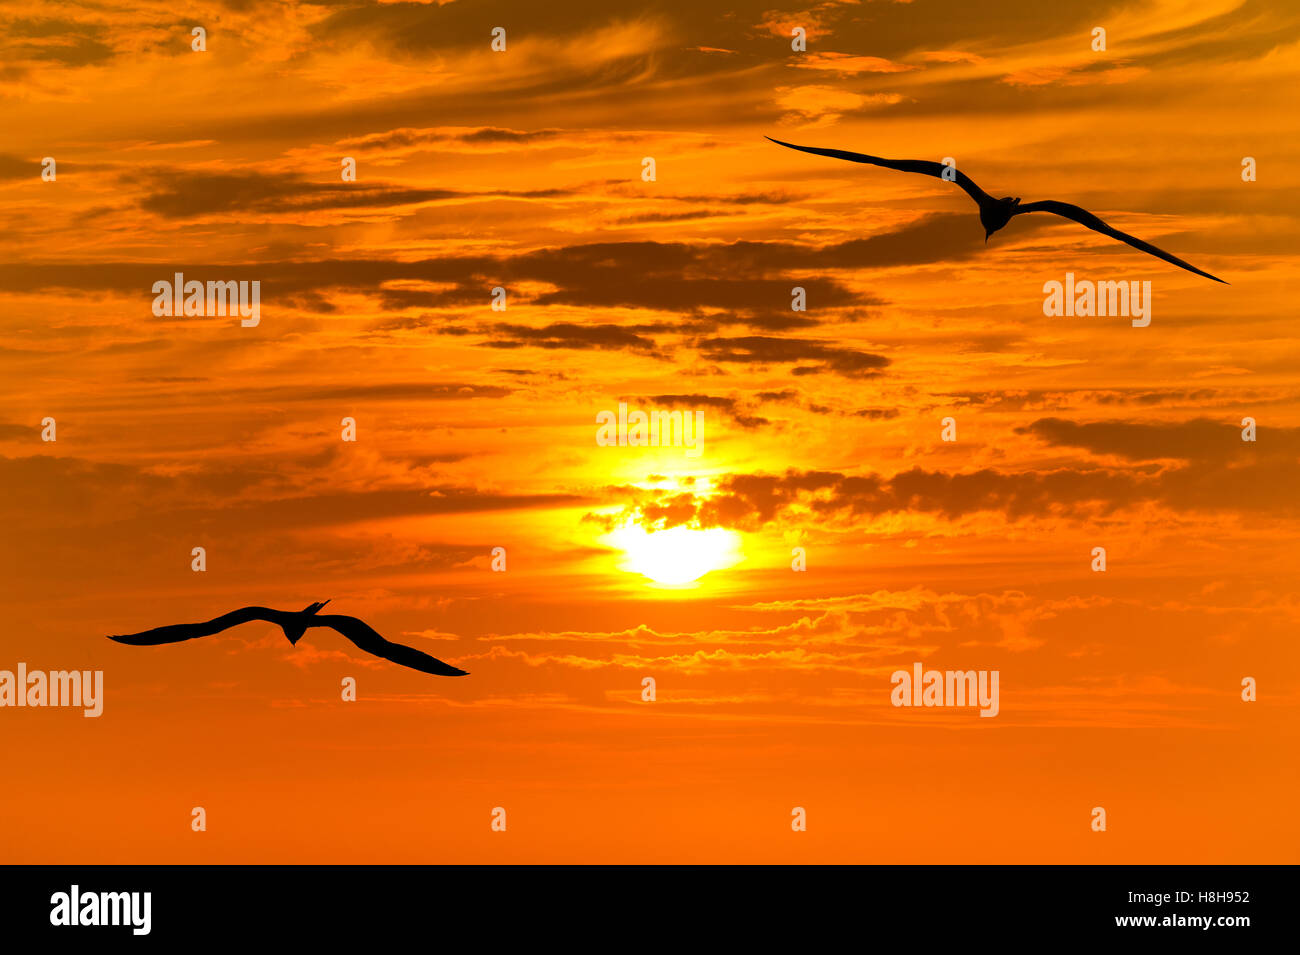 Silhouette di uccelli battenti si stagliano due uccelli volare insieme contro una vibrante arancione tramonto d'oro del cielo. Foto Stock